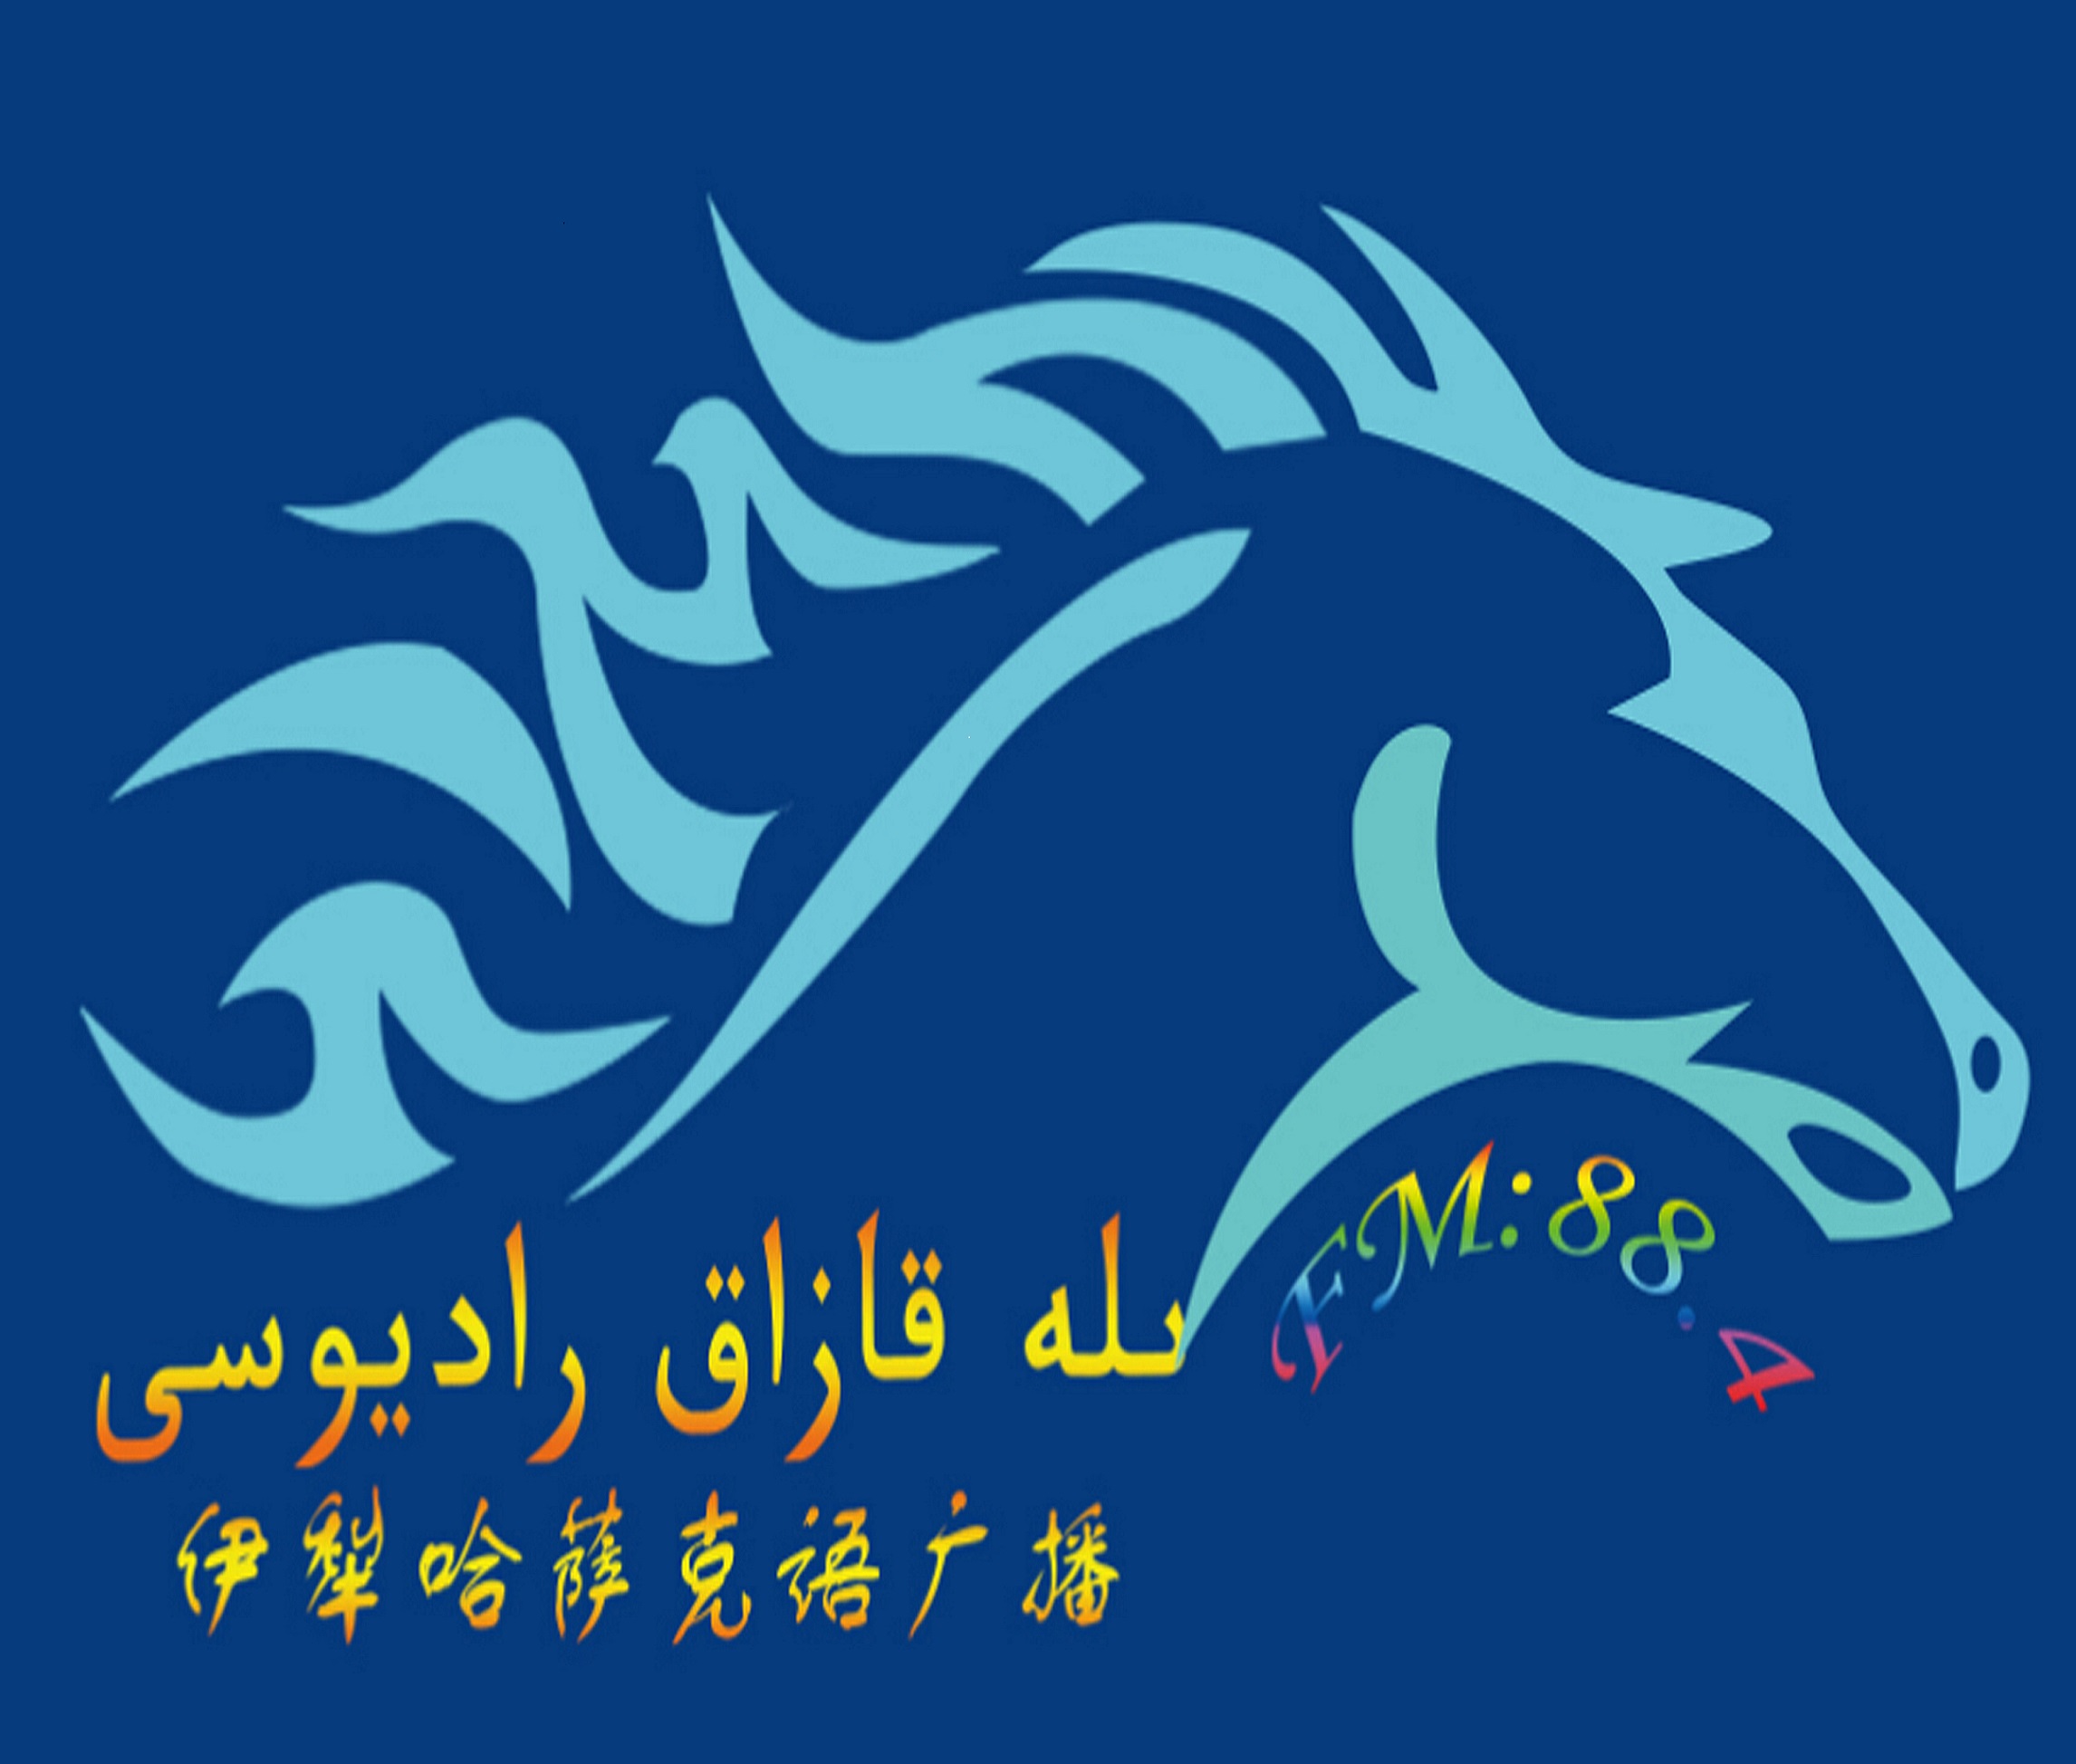 新疆哈语广告图片